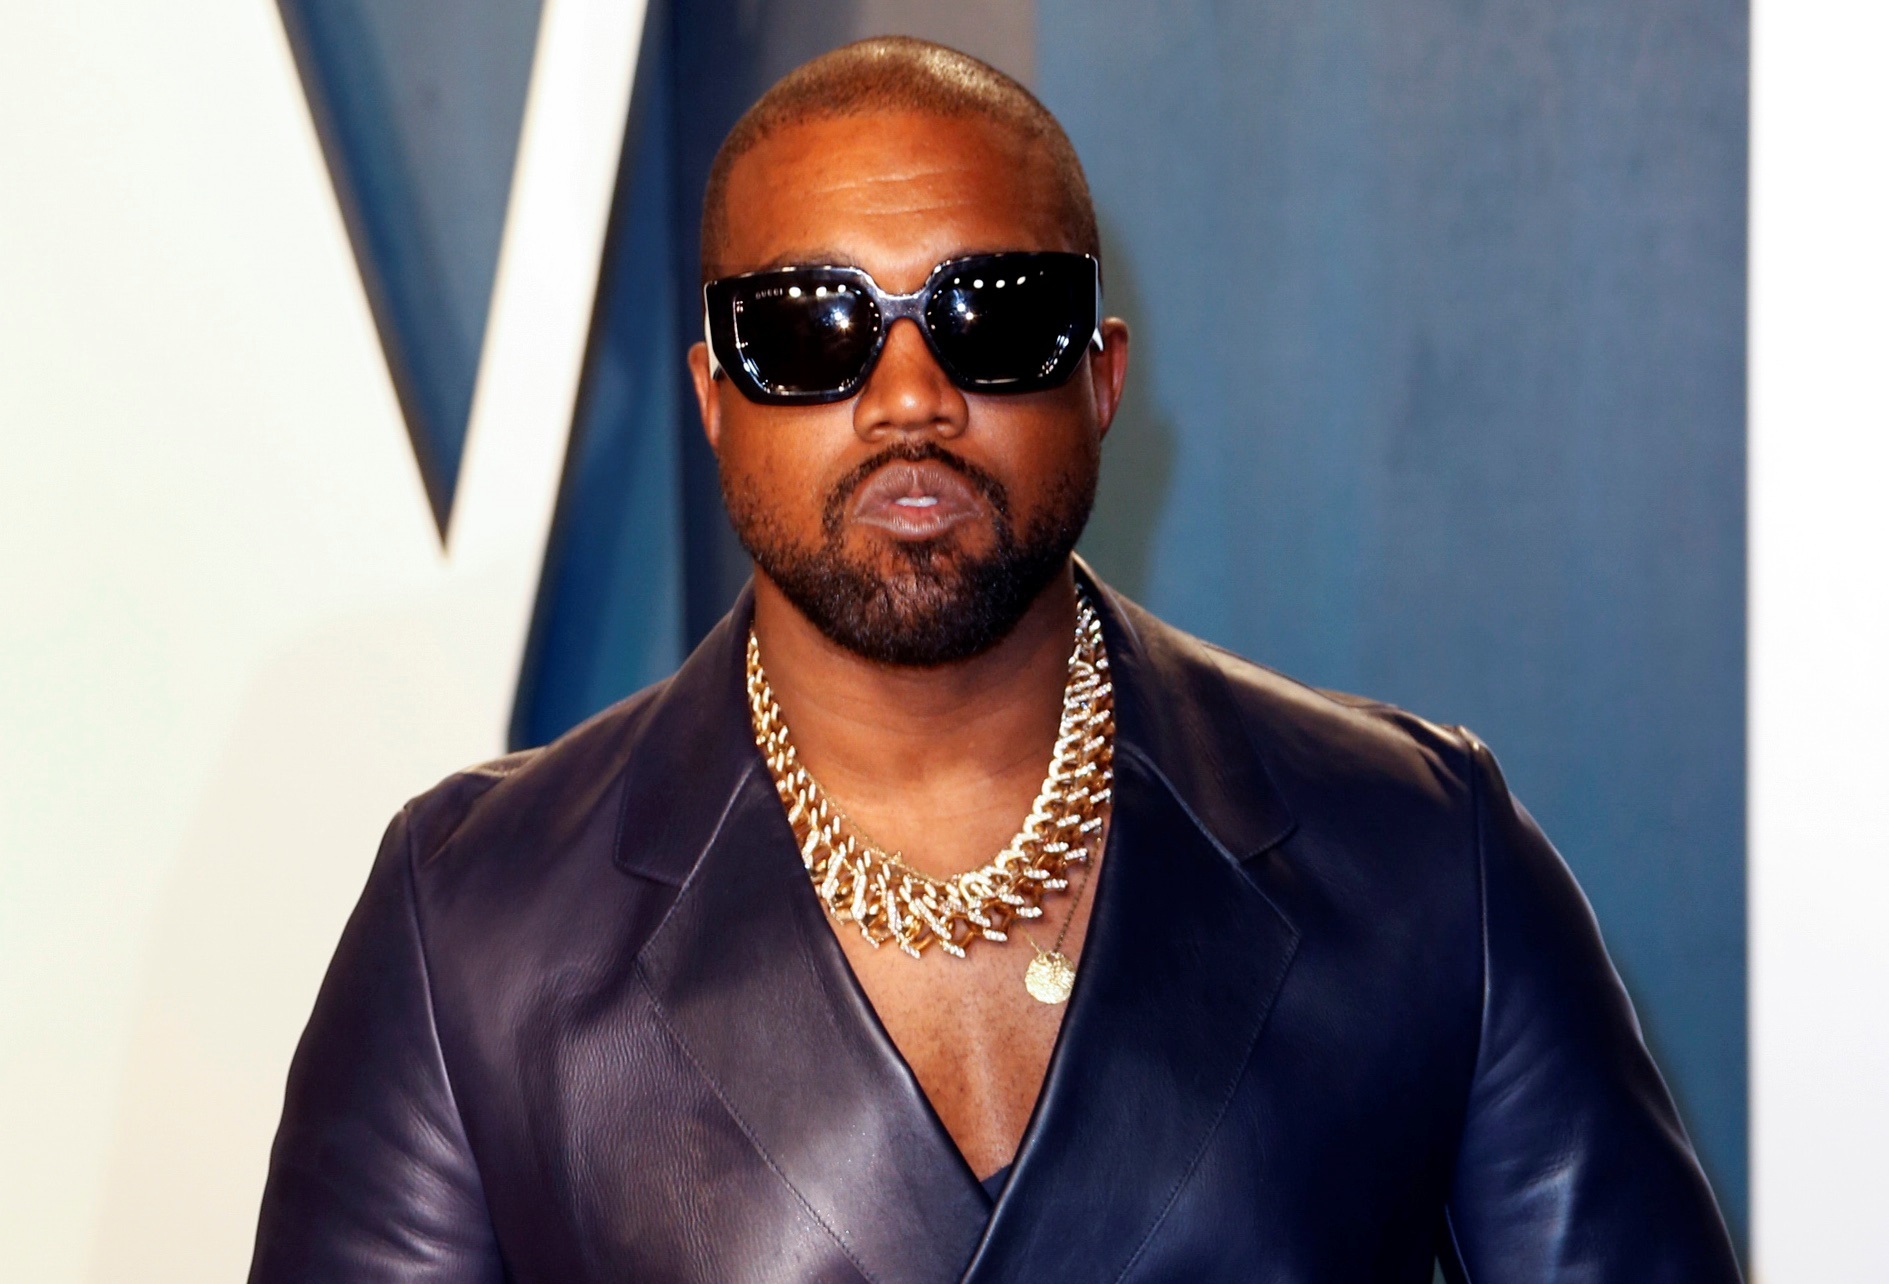 ¿Ya la escuchaste? Donda de Kanye West batió récords mundiales en un día